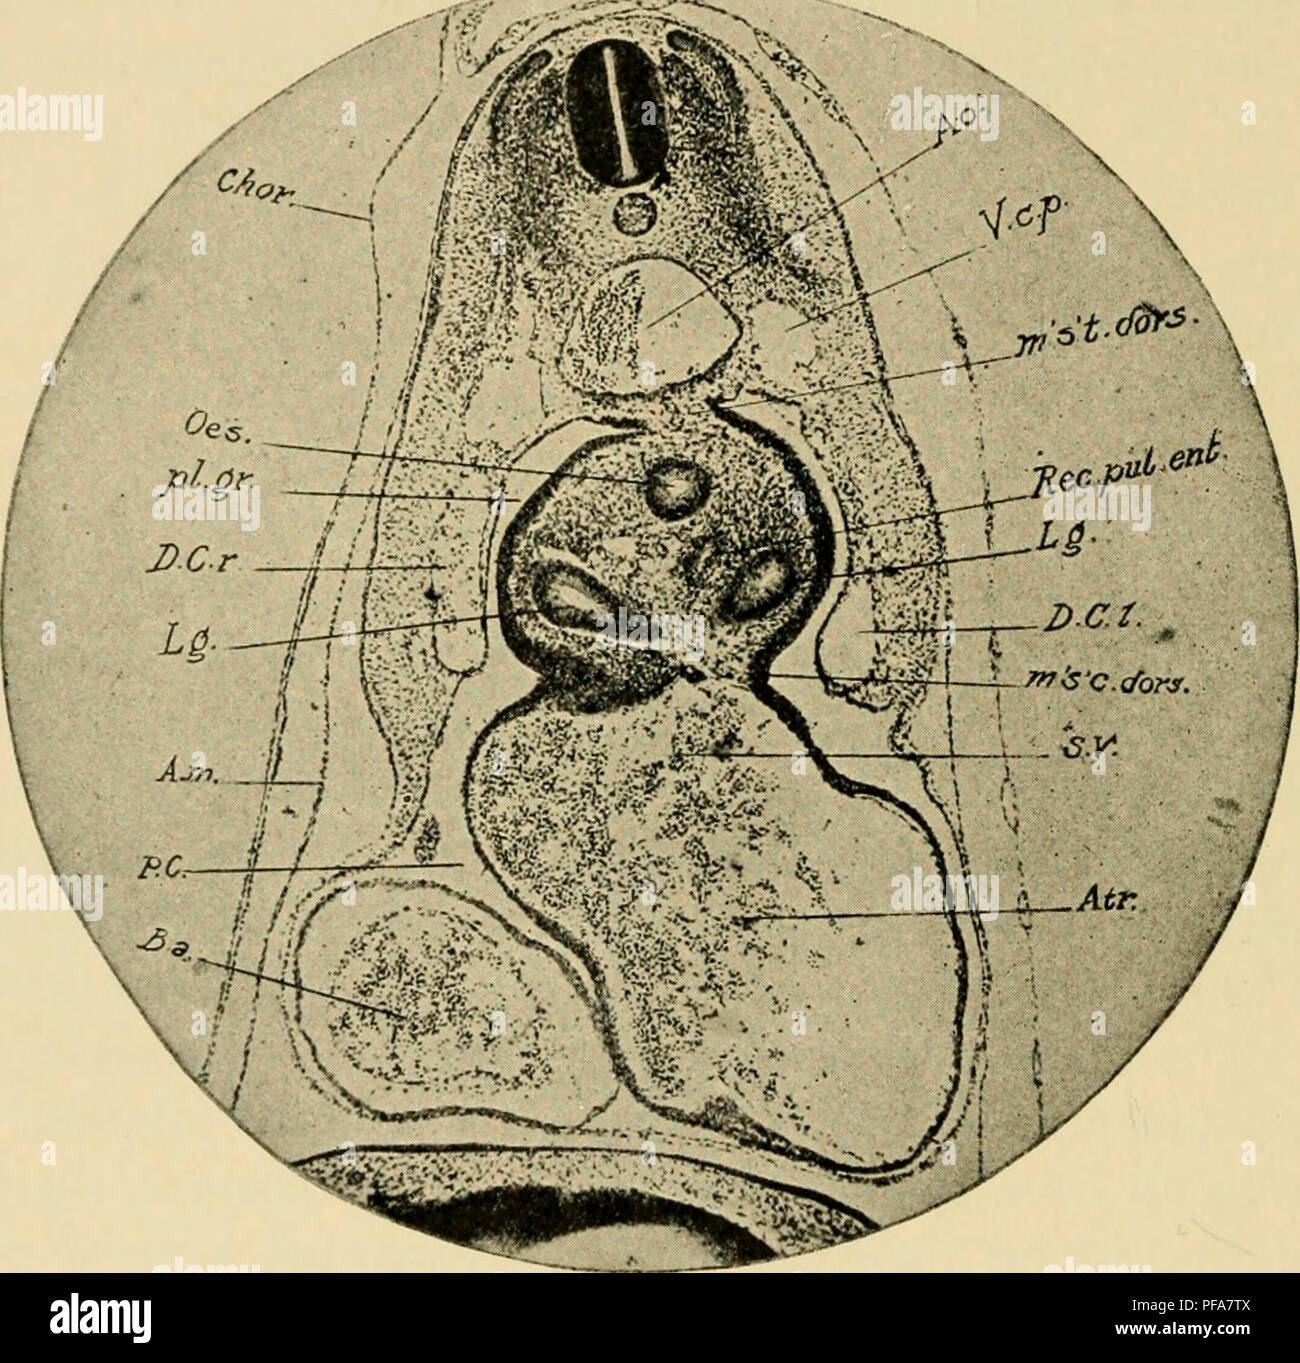 . Le développement du poussin : une introduction à l'embryologie. L'embryologie ; Poulets -- les embryons. 208 LE DÉVELOPPEMENT DU POUSSIN au lieu d'en face d'eux comme avant. Par conséquent dans les coupes transversales, en face de l'mesocardia latéral, la cavité pleurale rainures apparaissent comme des projections de la dorsale (pariétal), la cavité péricardique plus tard séparé de l'un d'autre de la ligne médiane par l'œsophage (Fig. 118). Les relations des trois divisions du corps embryonnaire-cavités ainsi établis peuvent être décrites comme suit : la cavité pariétale contient le coeur, et est donc la péri- prospective ,-;rg Banque D'Images